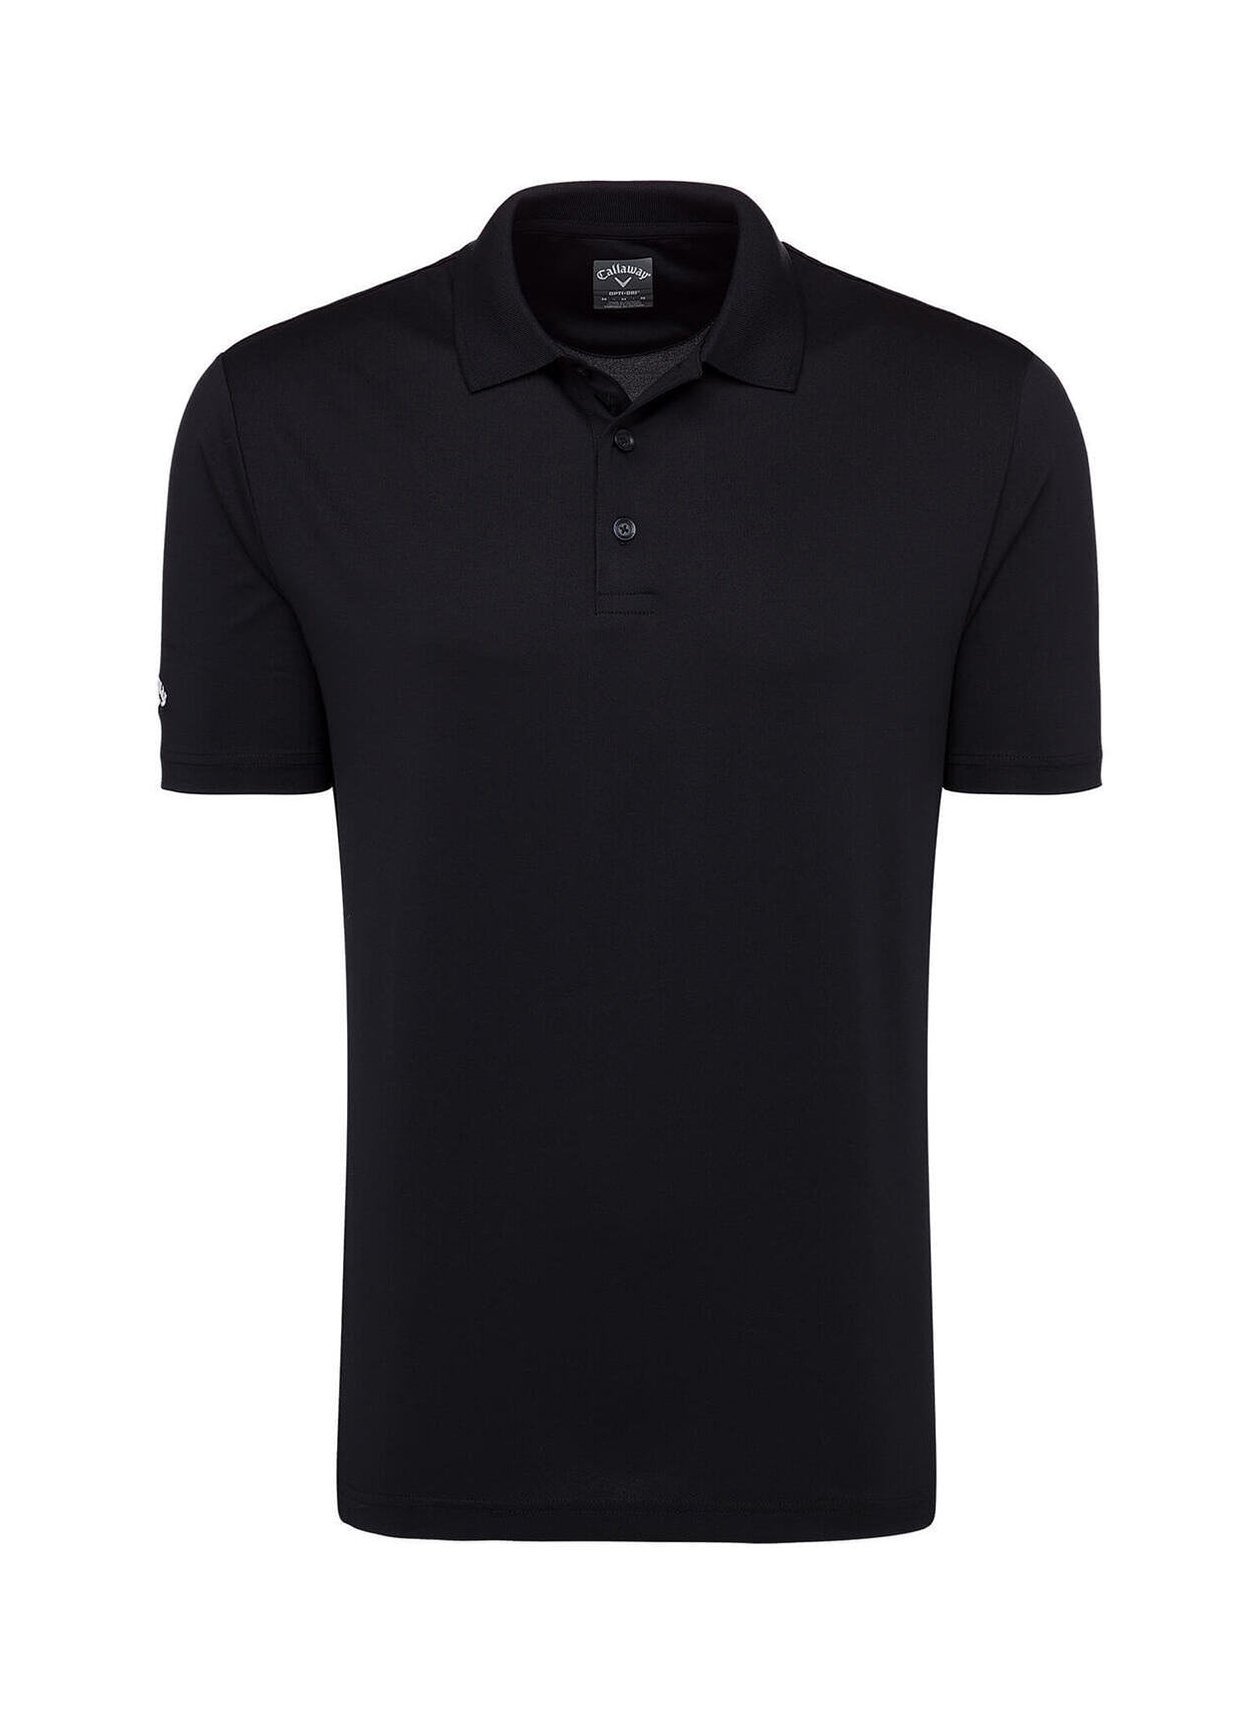 Embroidered Callaway Men's Black Golf Opti-Dri Chev Polo | Custom Vest